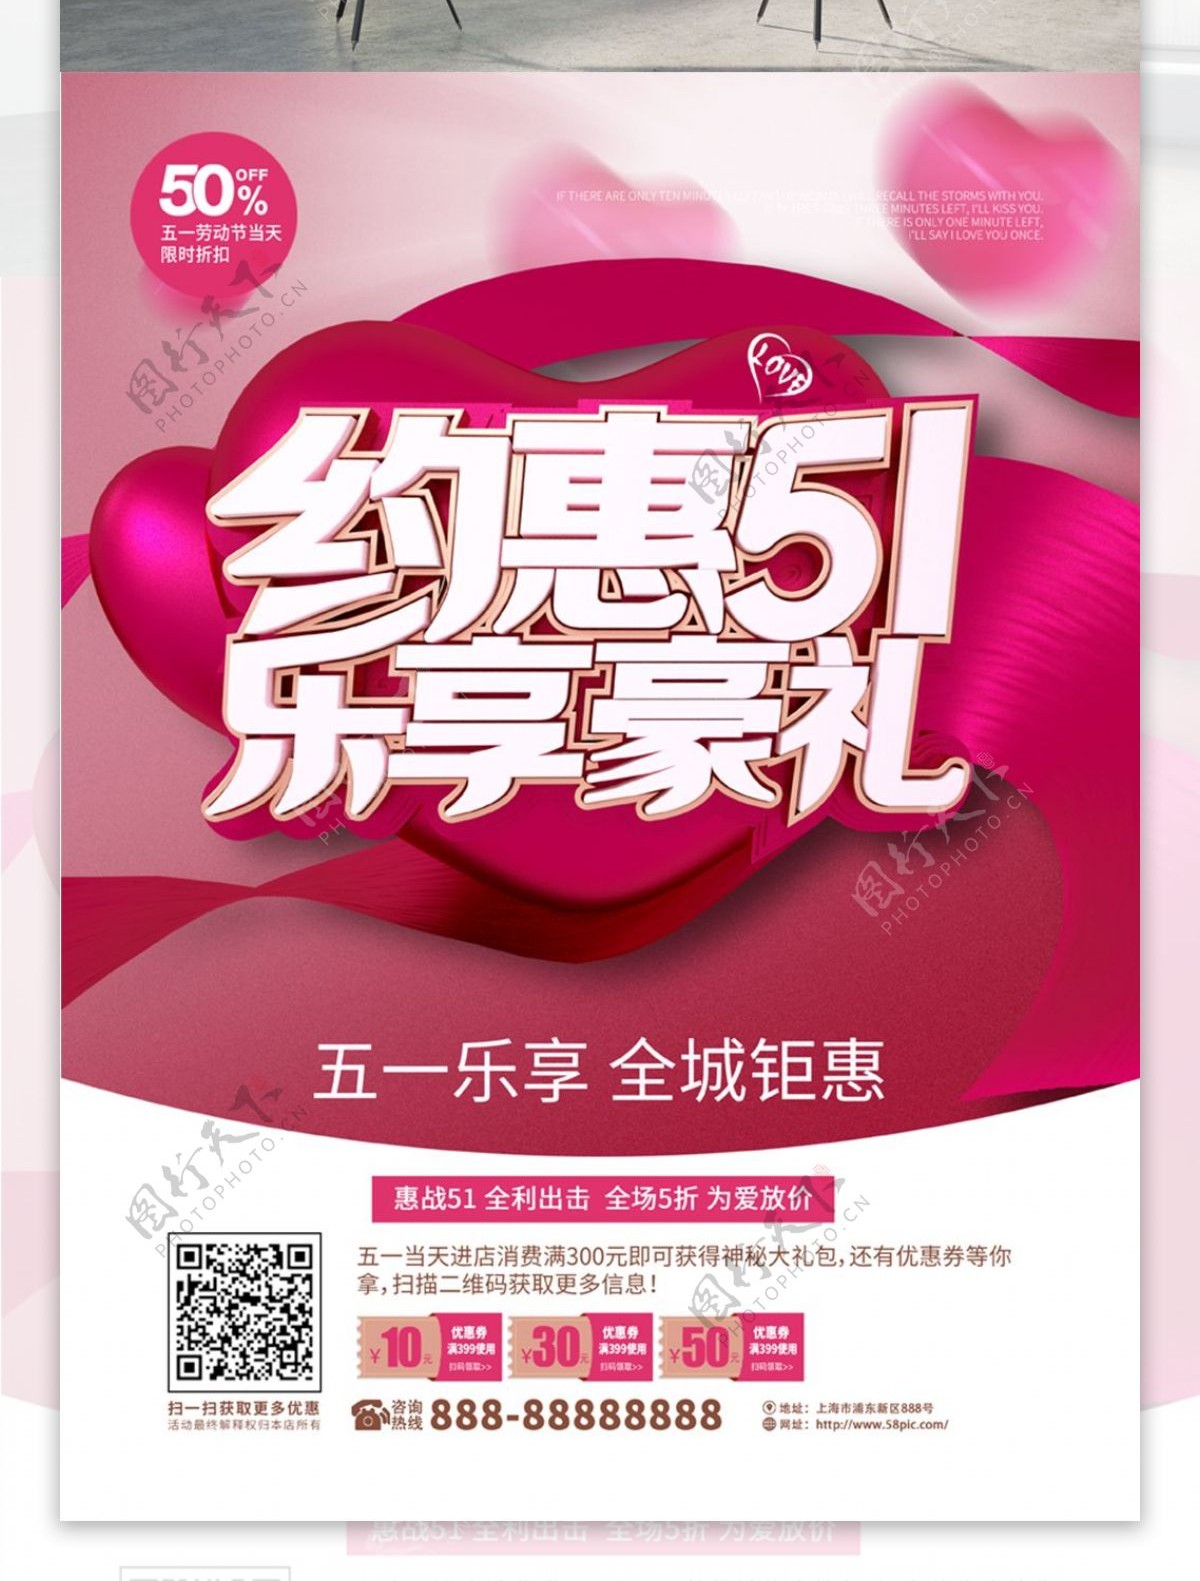 C4D粉红色51约惠乐享豪礼促销海报